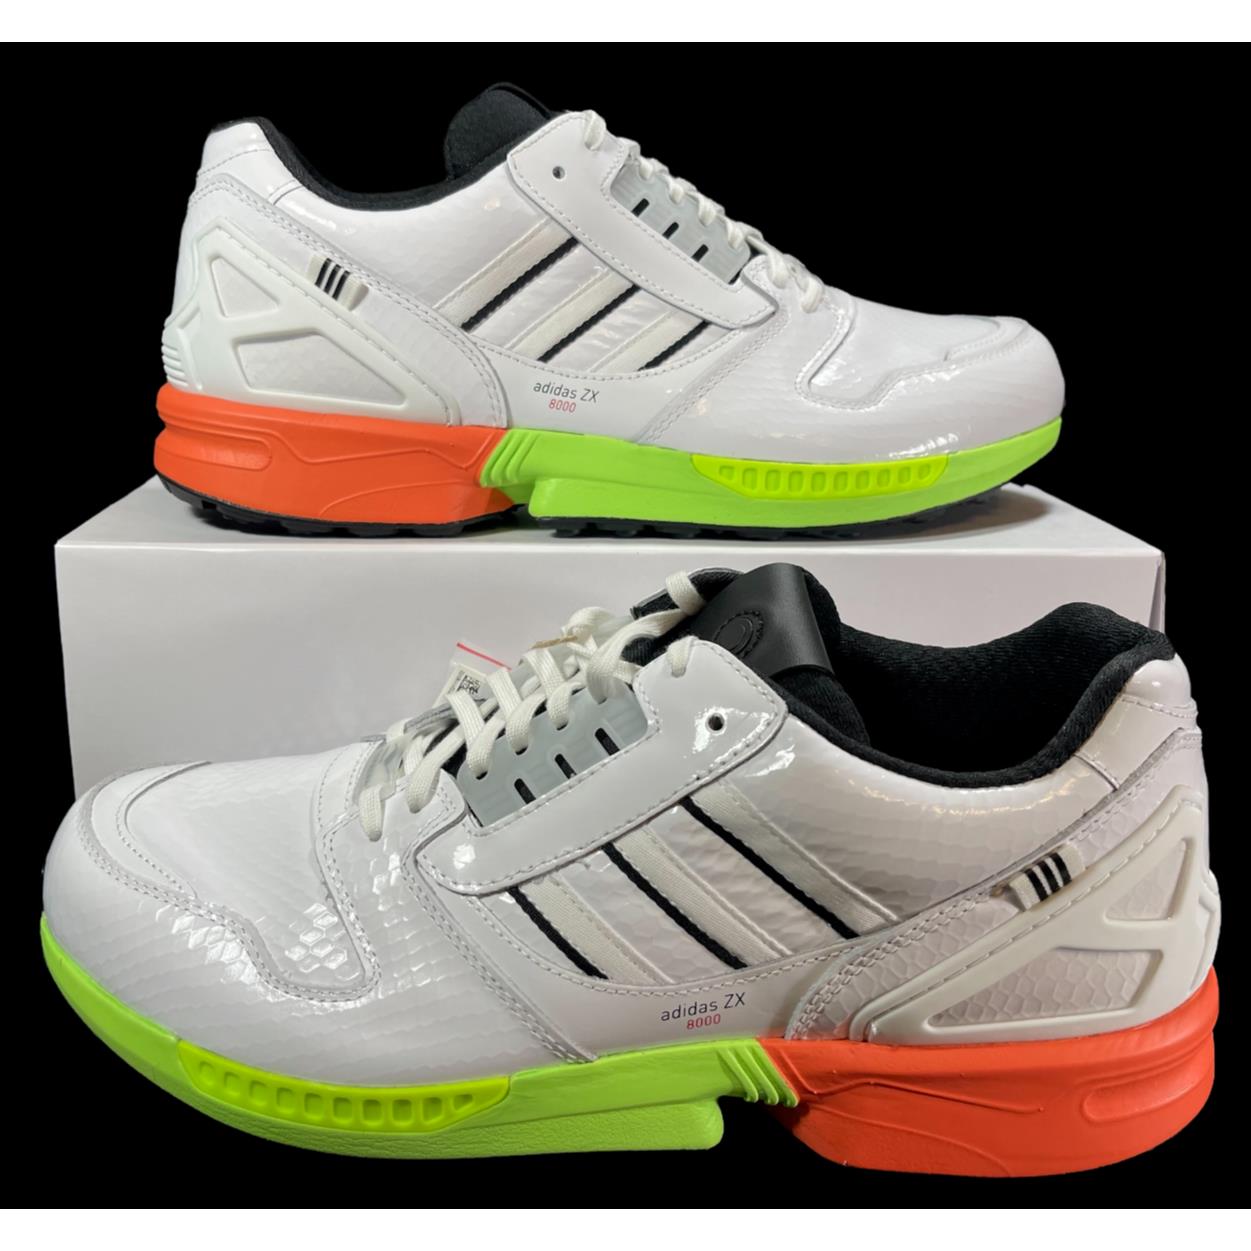 Adidas Originals A-zx Series ZX 8000 SG Golf Shoes Sneaker FZ4412 12 Men